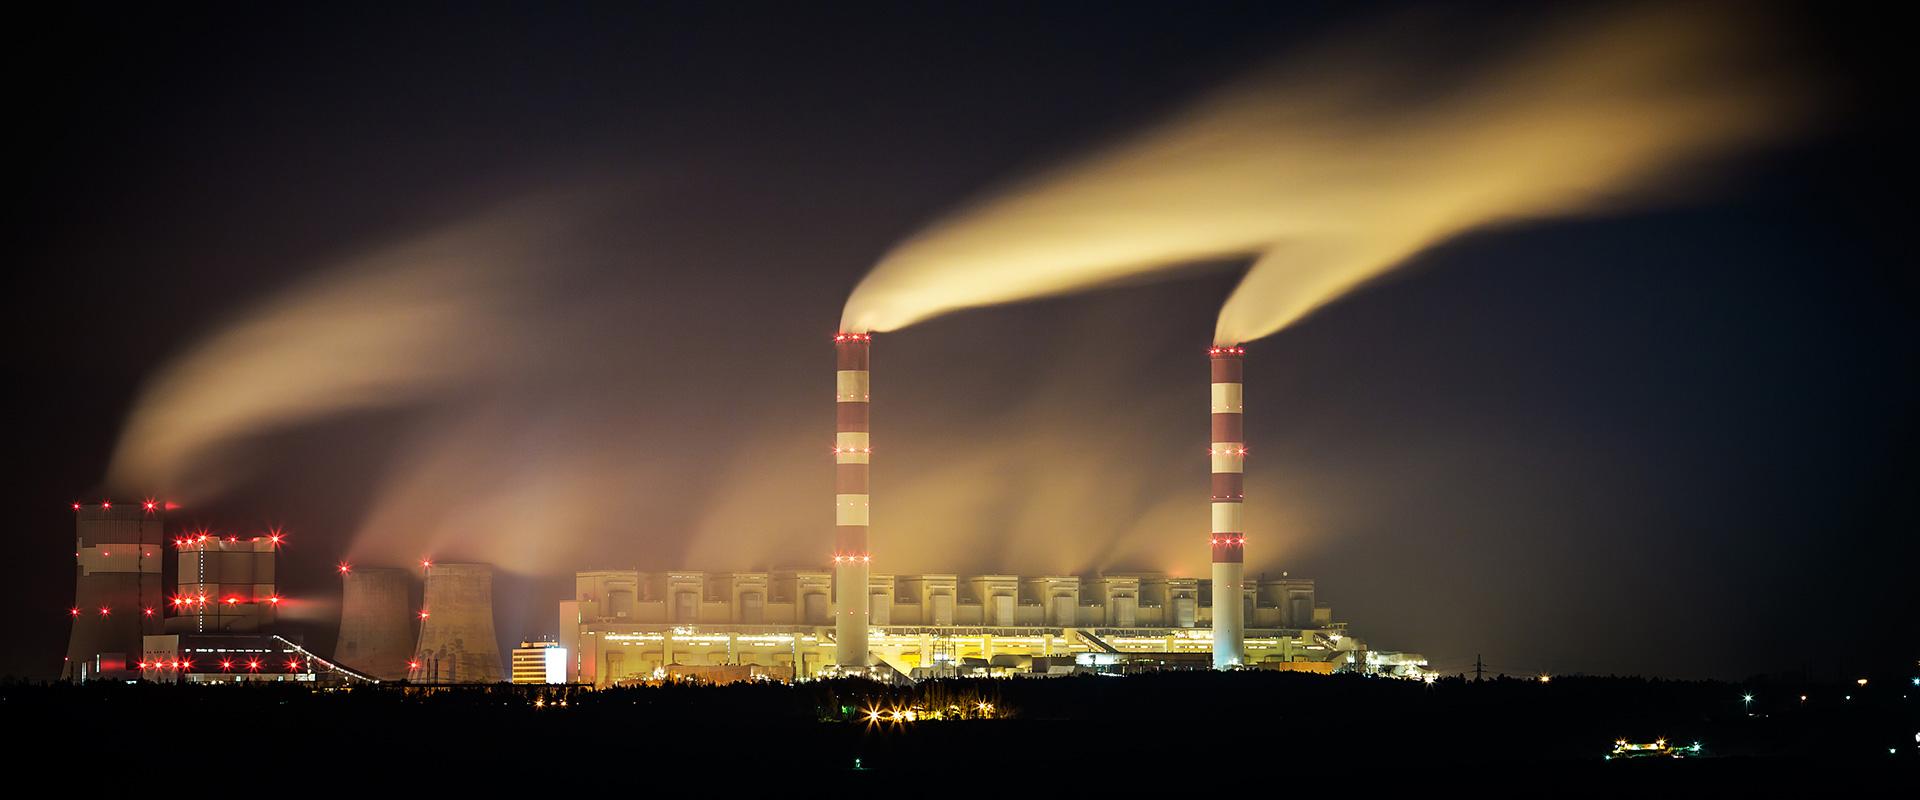 Vue des émissions de vapeur d'une centrale nucléaire, Pologne